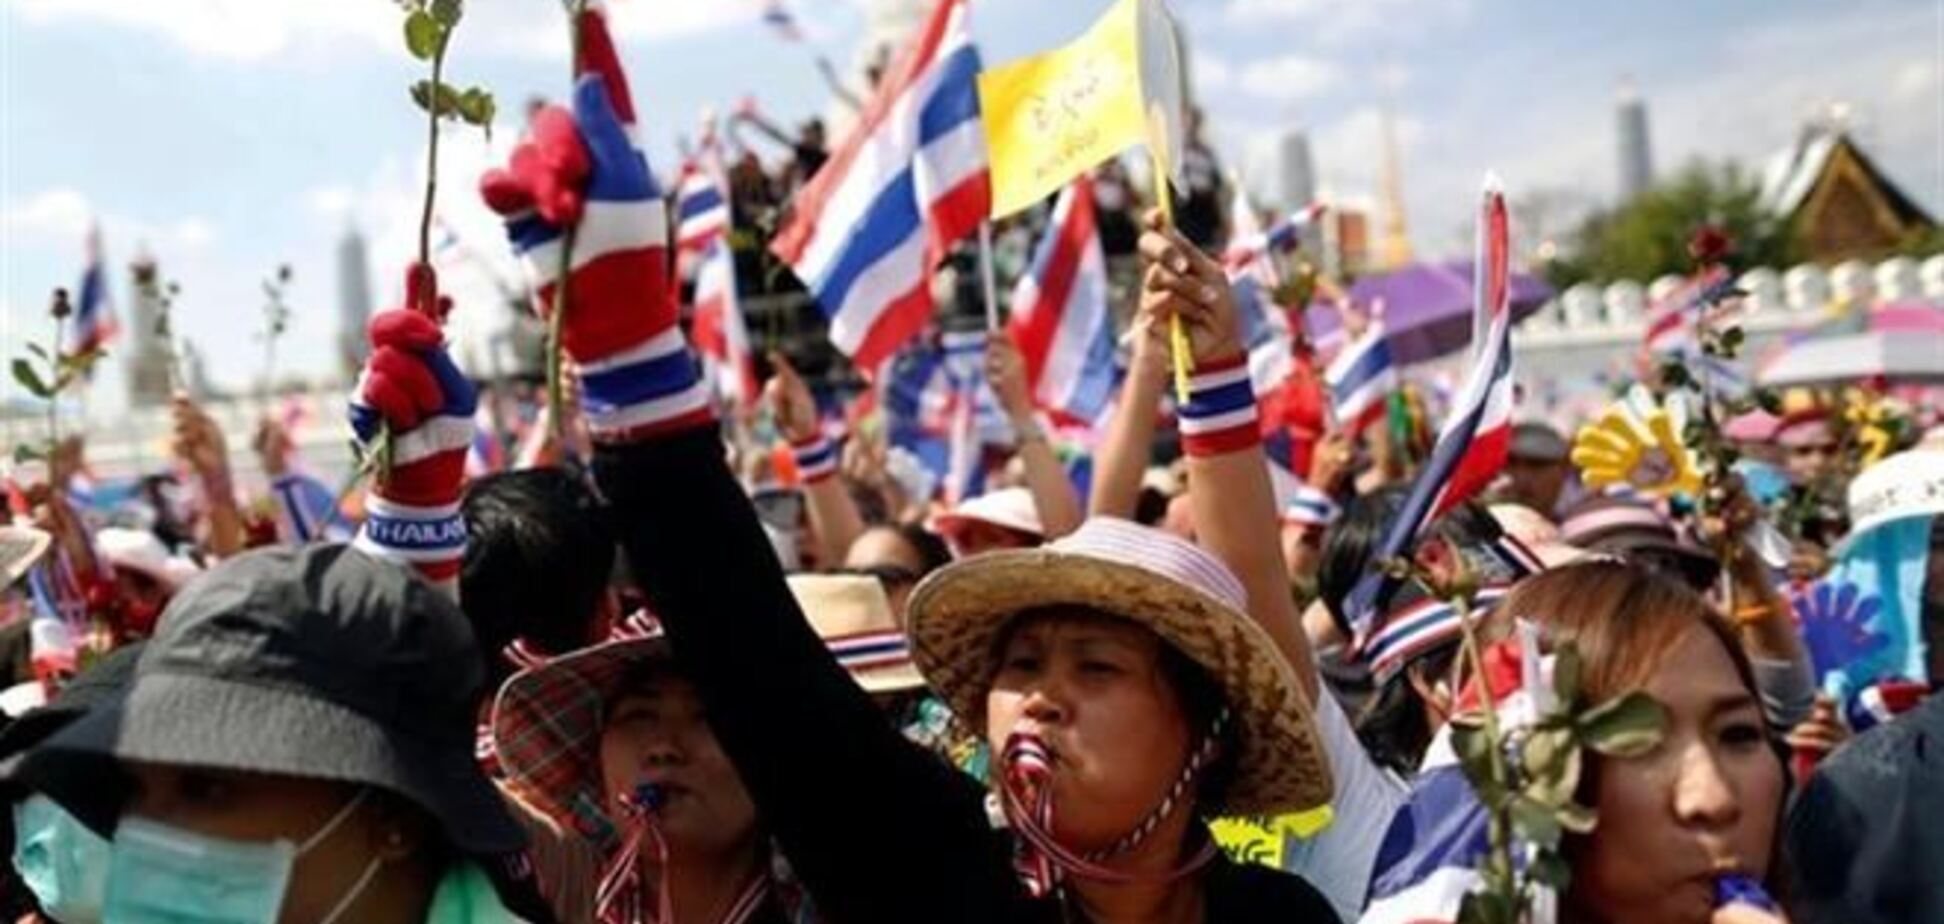 От поездок в Таиланд из-за протестов отказались 300 тыс. туристов 